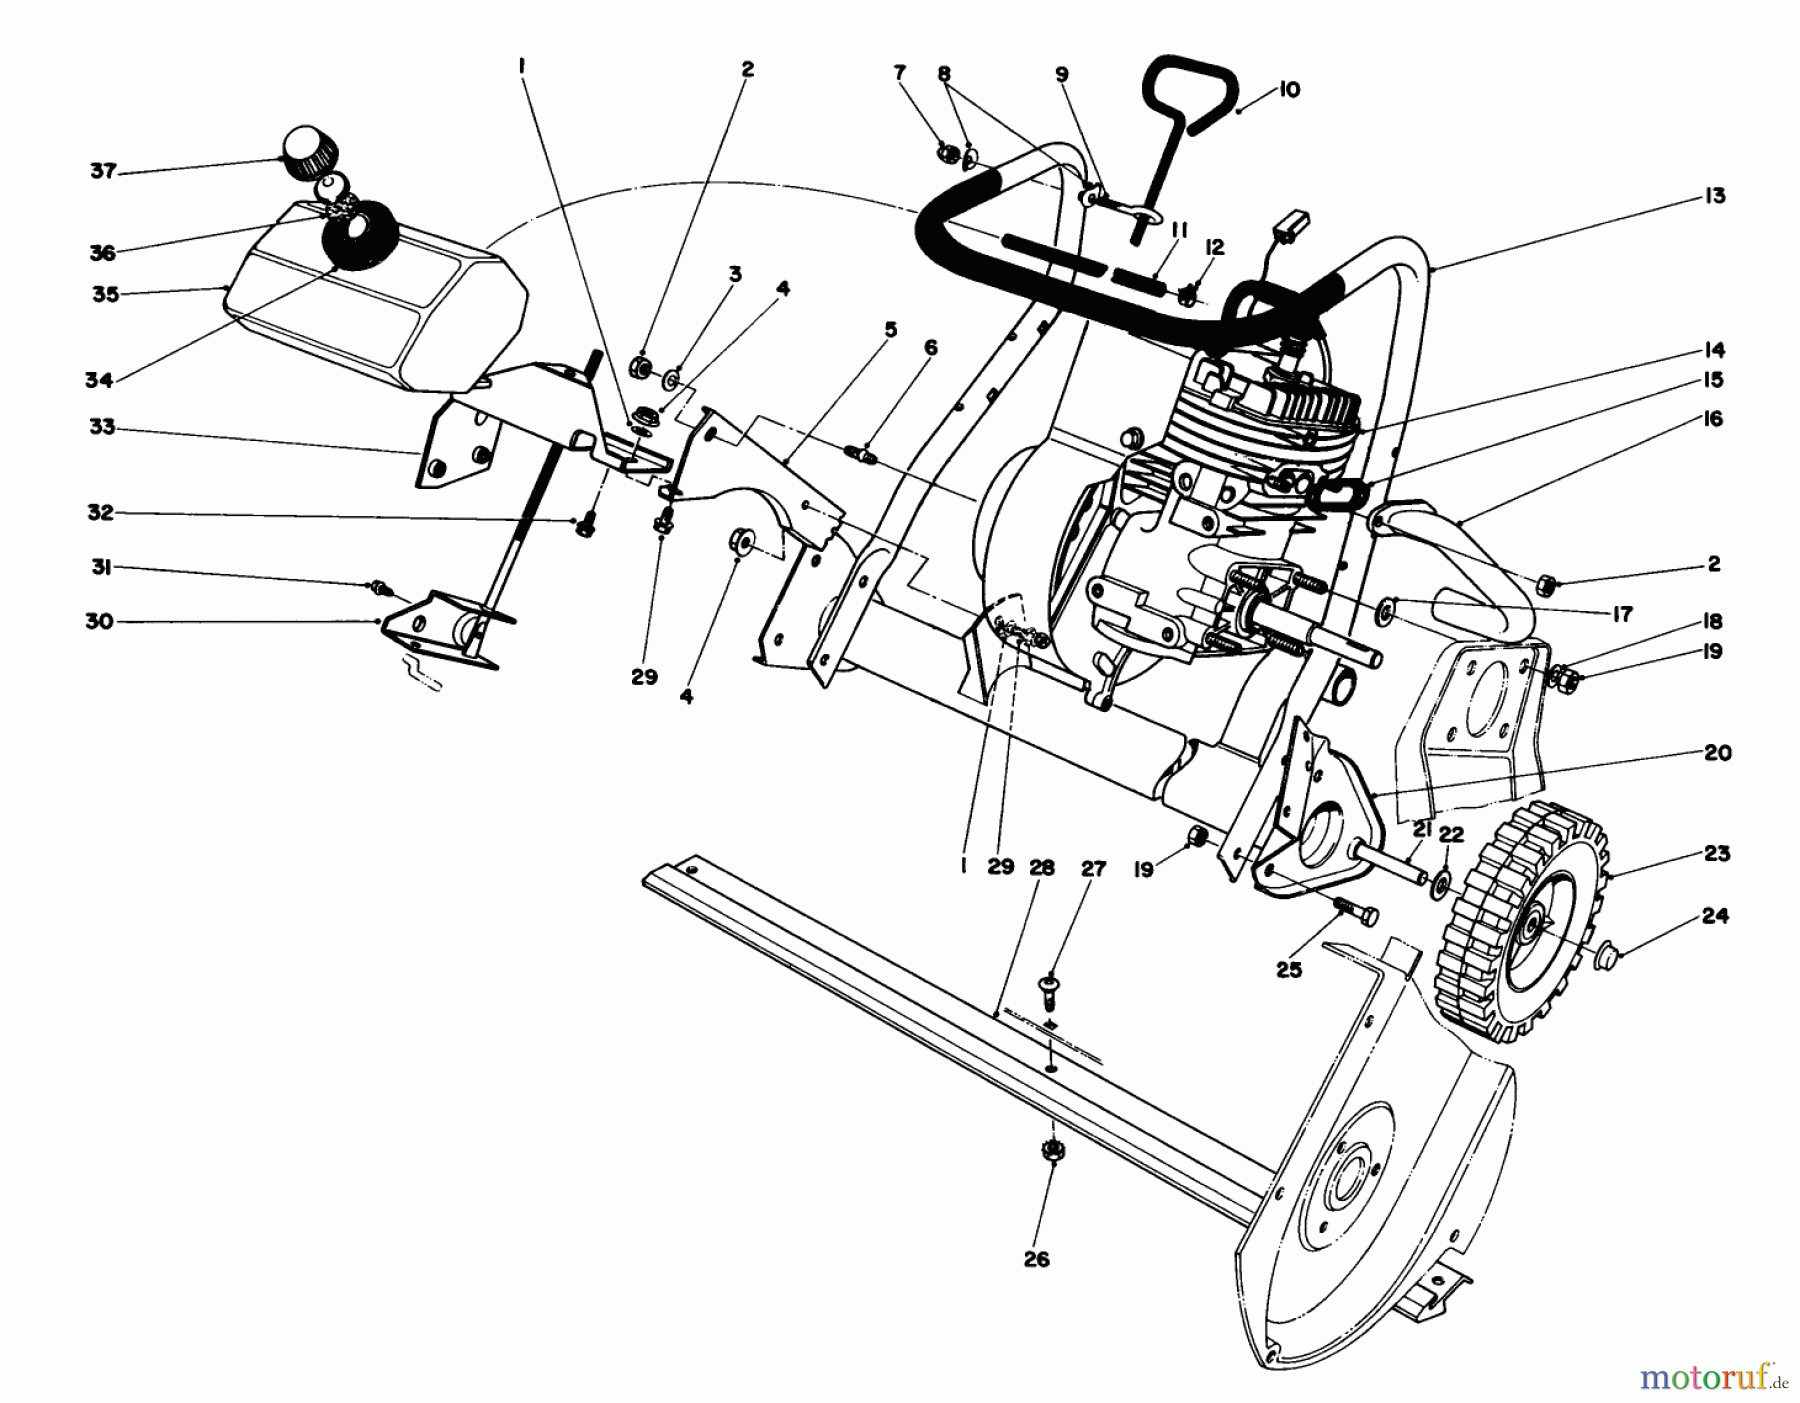  Toro Neu Snow Blowers/Snow Throwers Seite 1 38165 (S-620) - Toro S-620 Snowthrower, 1986 (6000001-6999999) ENGINE ASSEMBLY